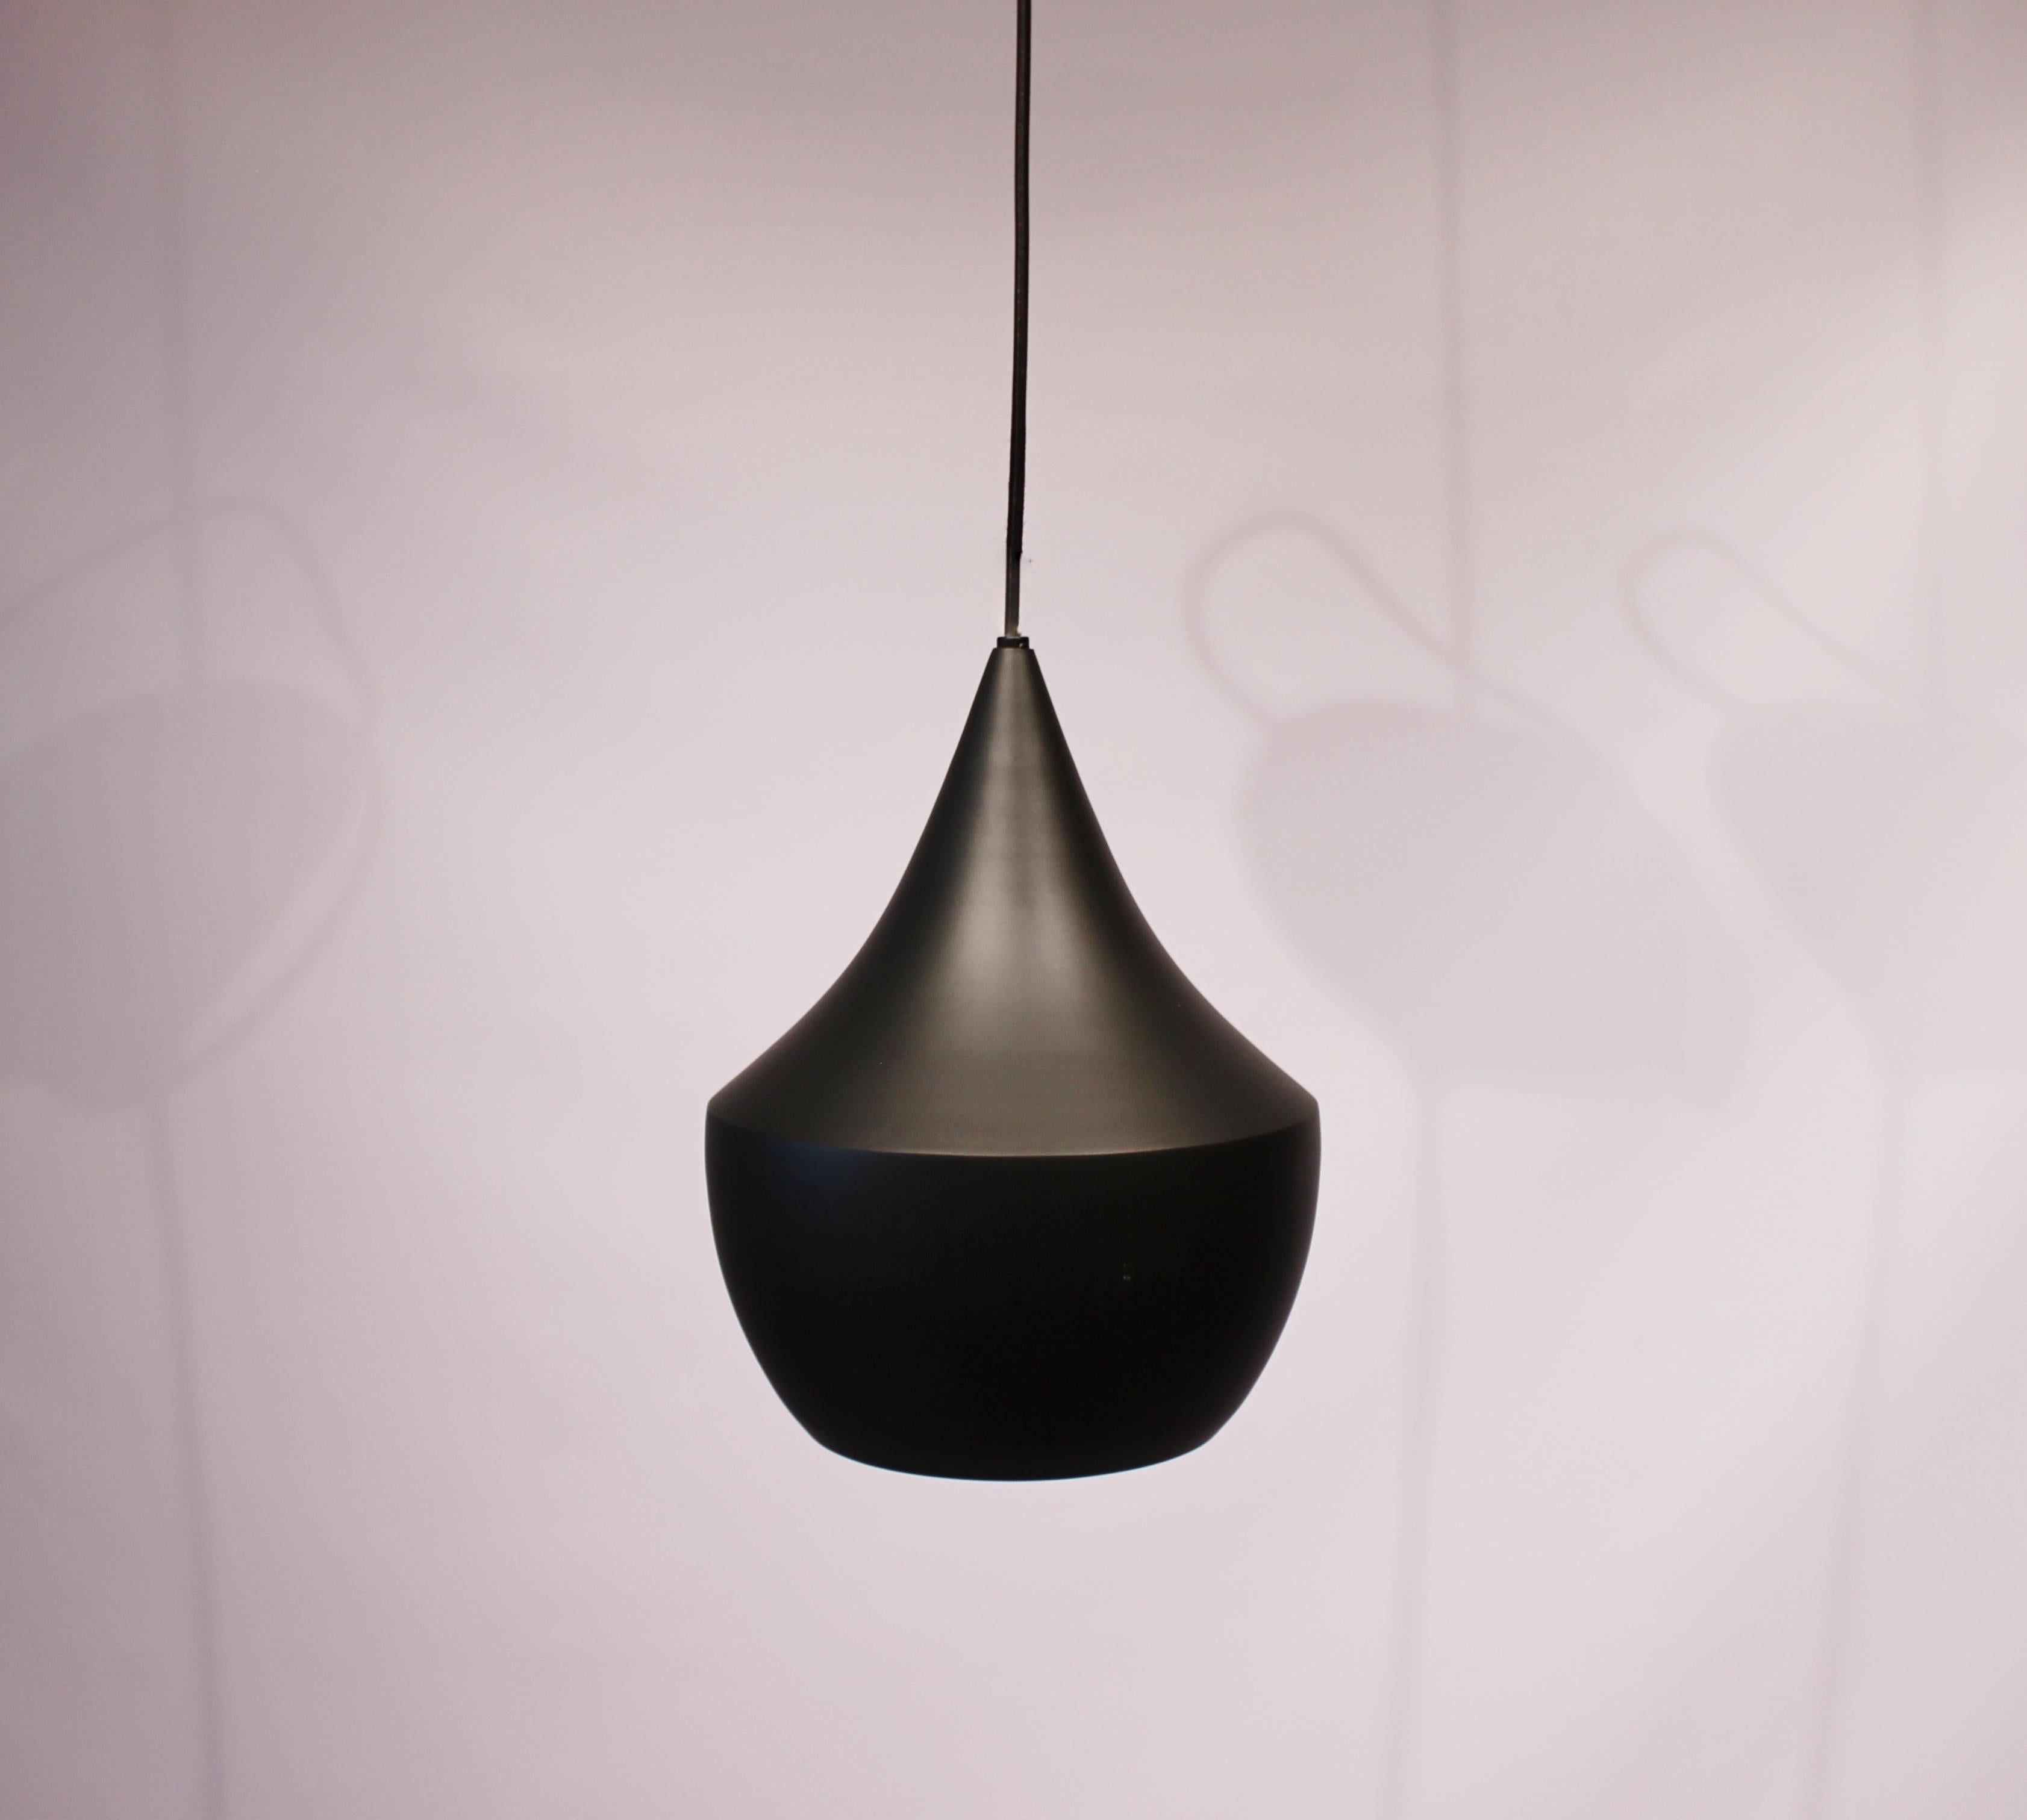 Beat Pendelleuchte, Modell BLA01EU, in der Farbe schwarz und aus Messing entworfen von Tom Dixon. Die Lampe ist in einem sehr guten Vintage-Zustand.